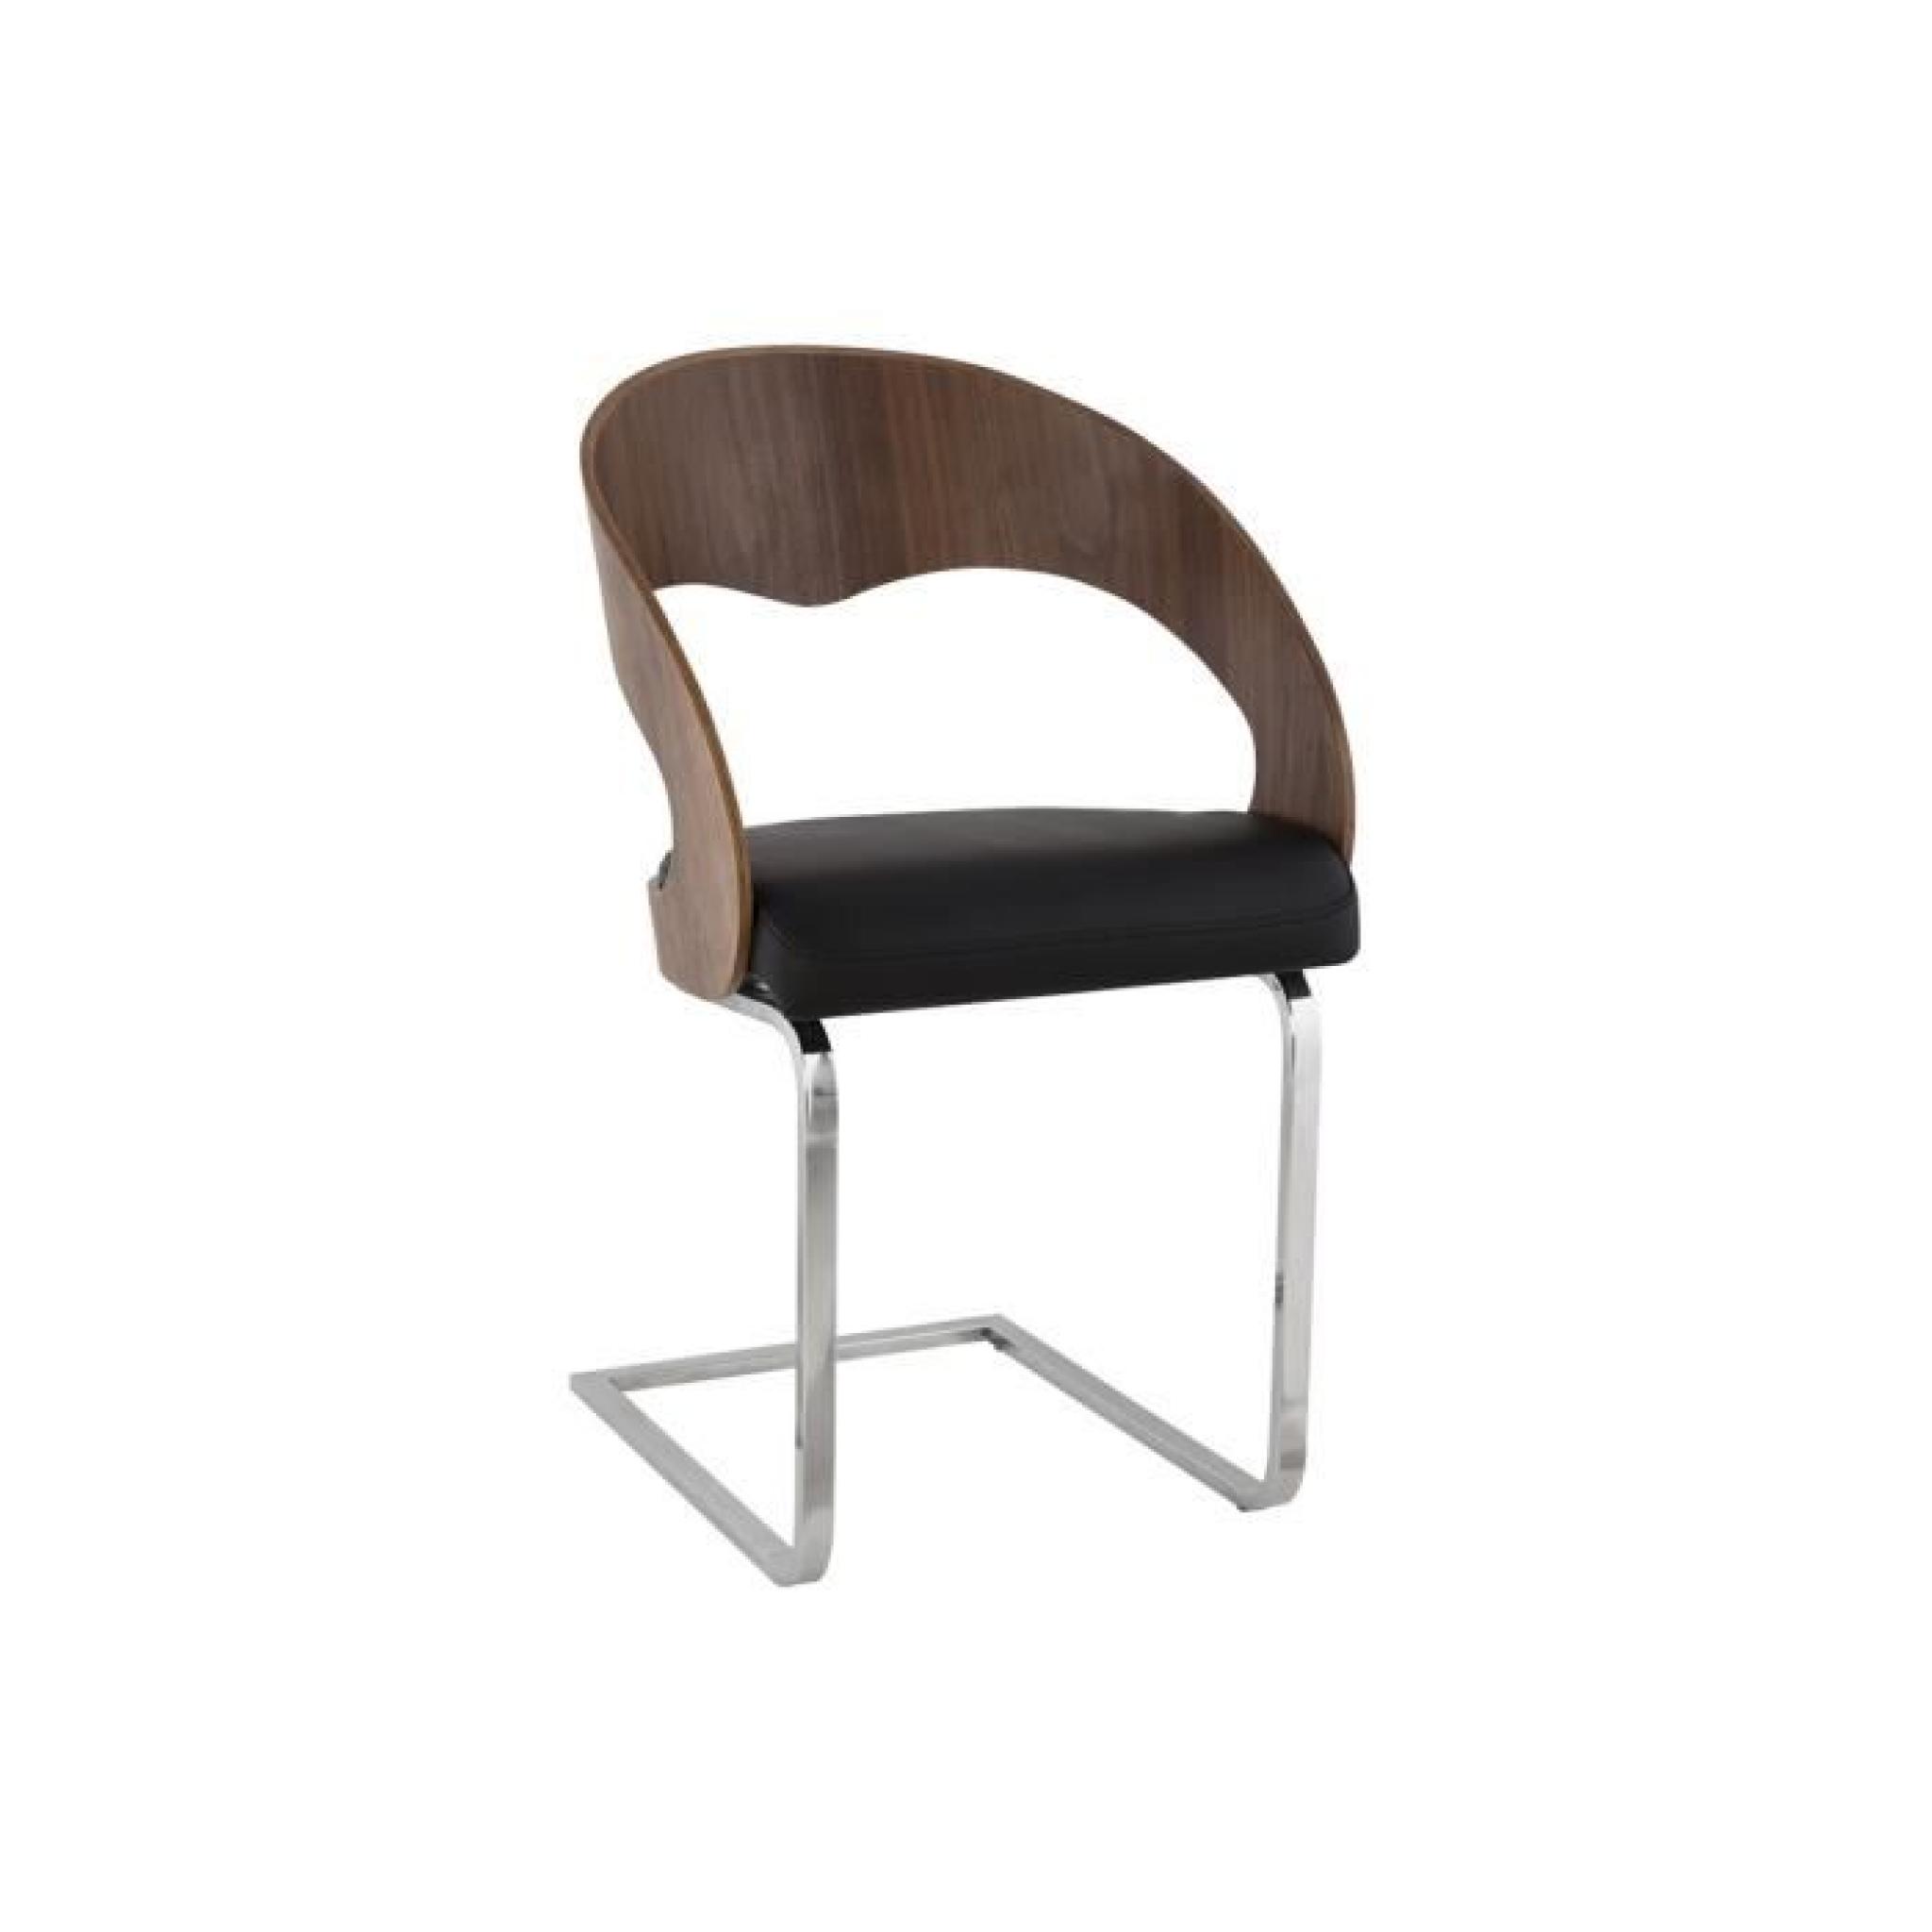 Chaise design bois PU noir/marron FOREST.